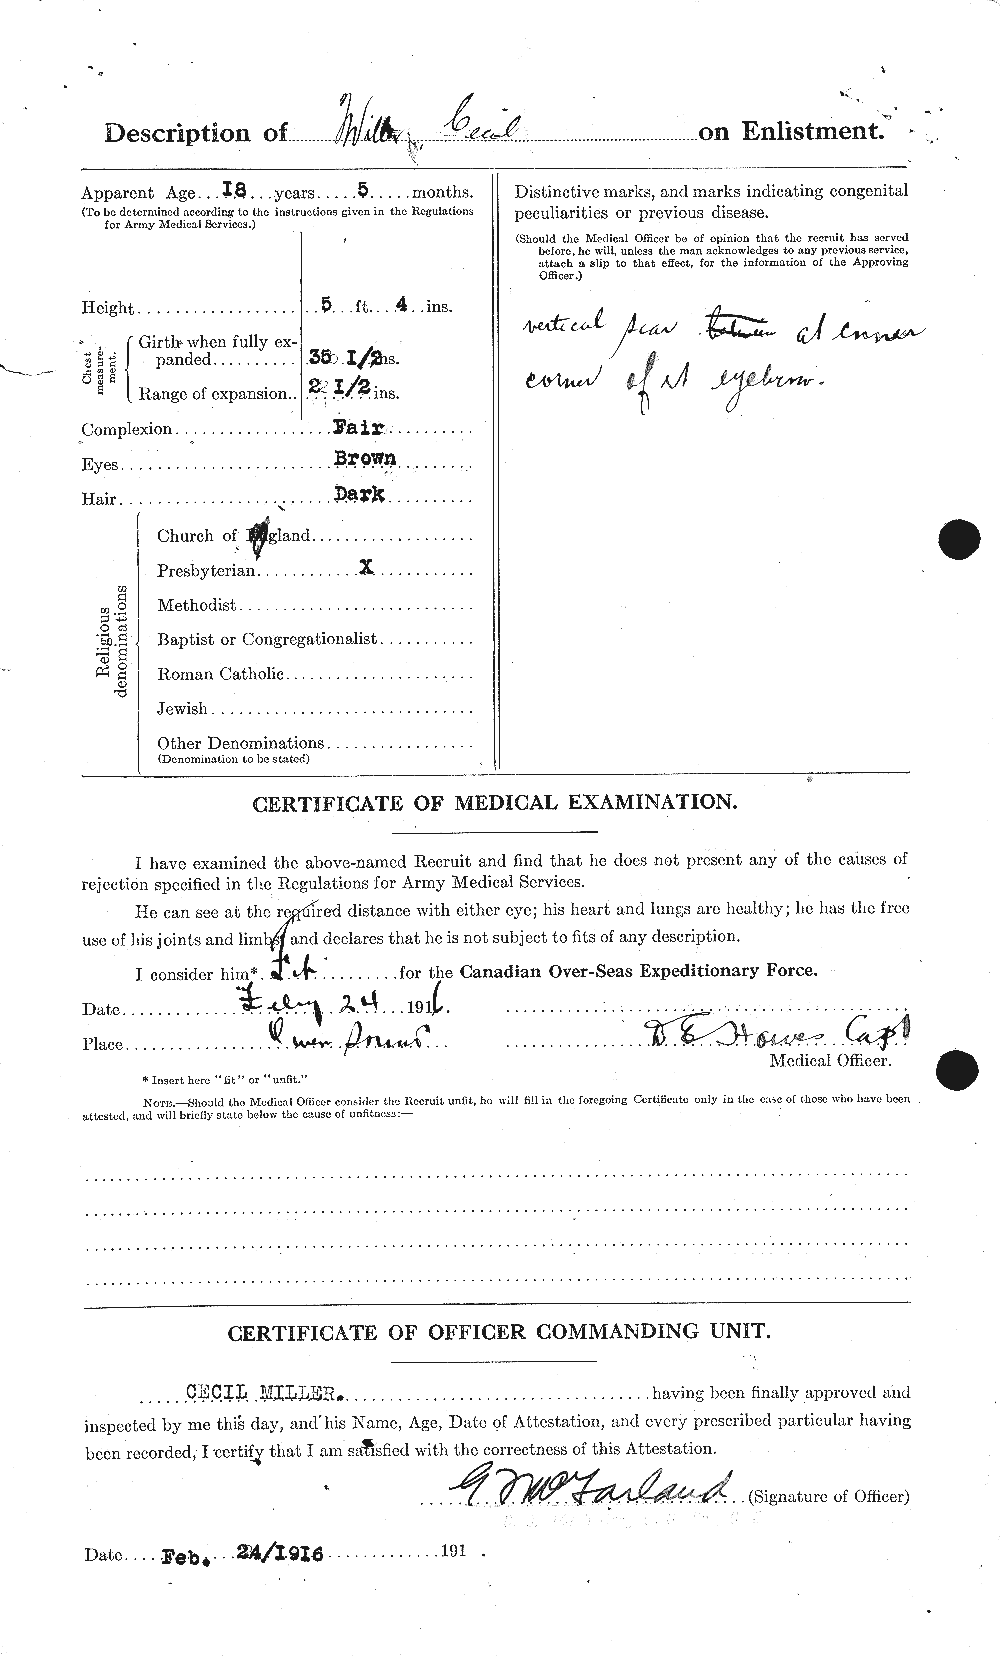 Dossiers du Personnel de la Première Guerre mondiale - CEC 498765b